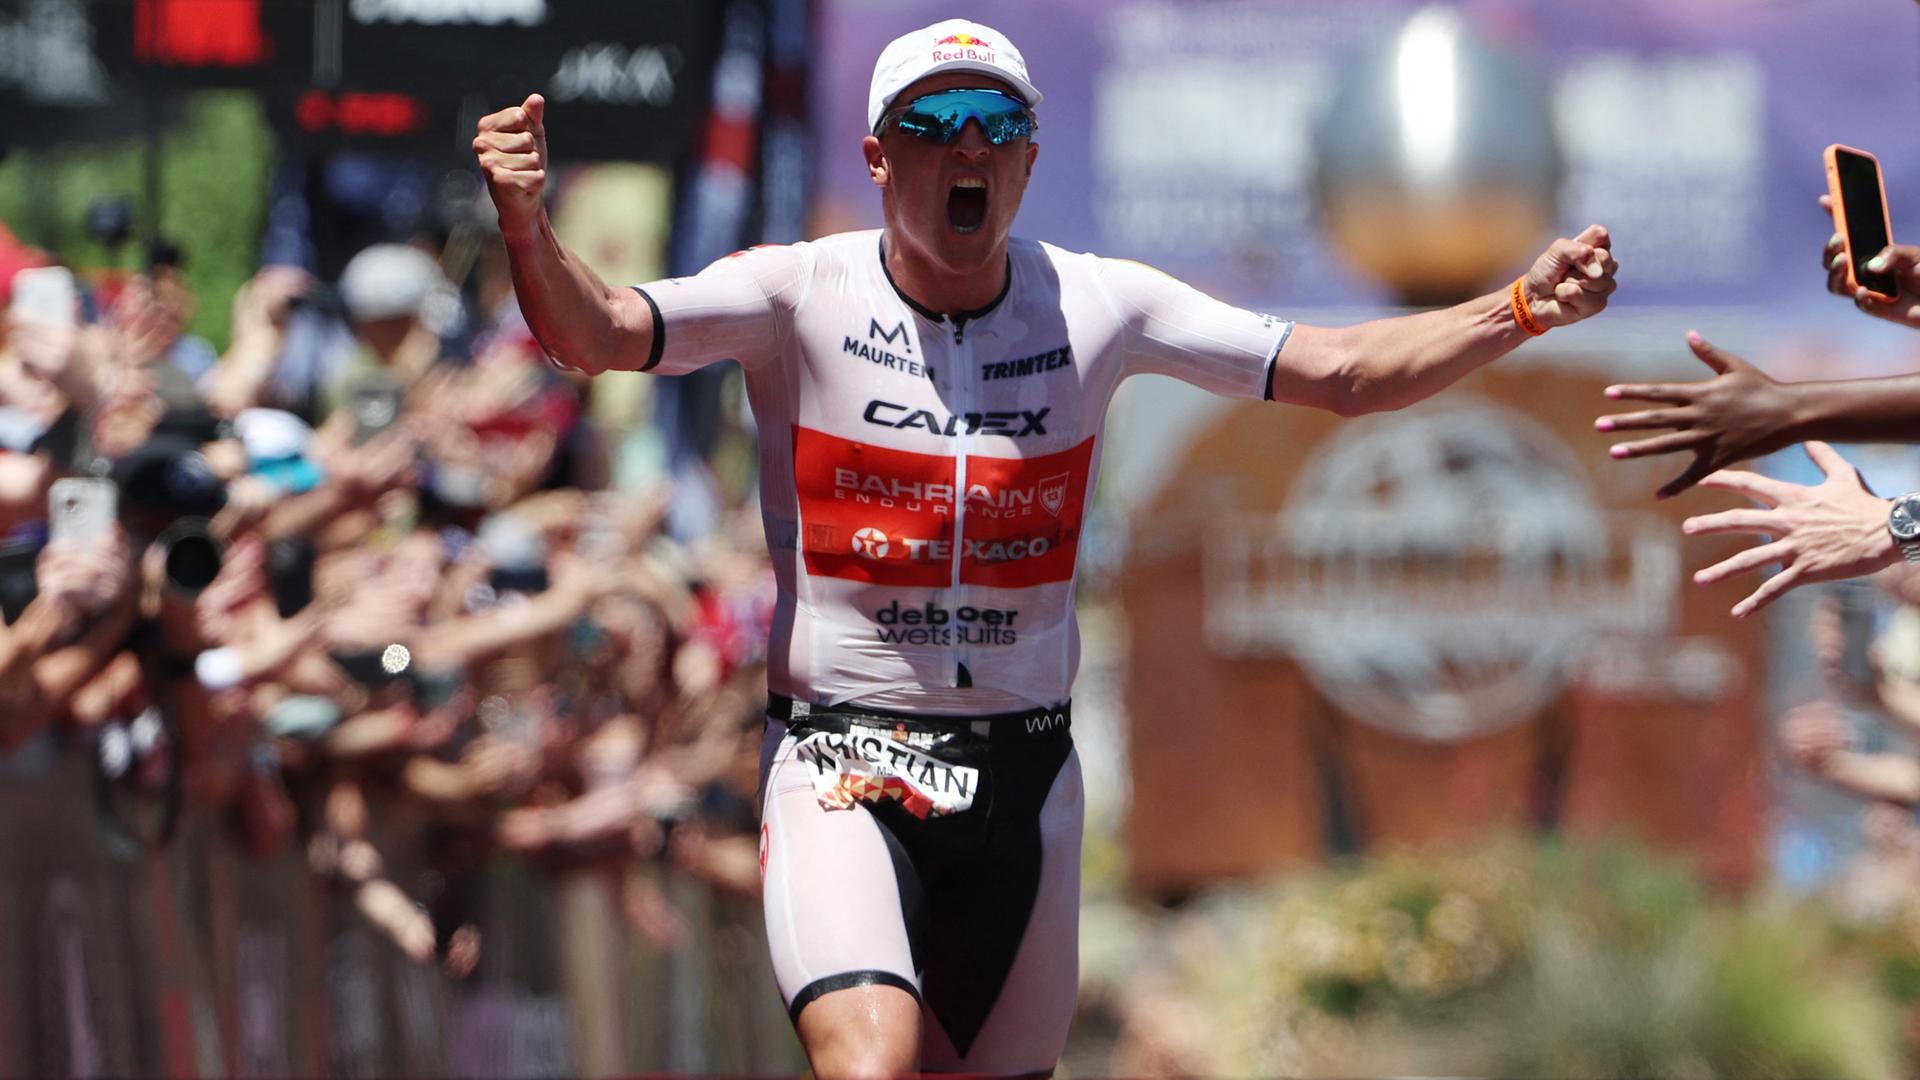 Der norwegische Sportler Kristian Blummenfelt jubelt nach seinem Erfolg bei der Ironman-WM in St. George in Utah.